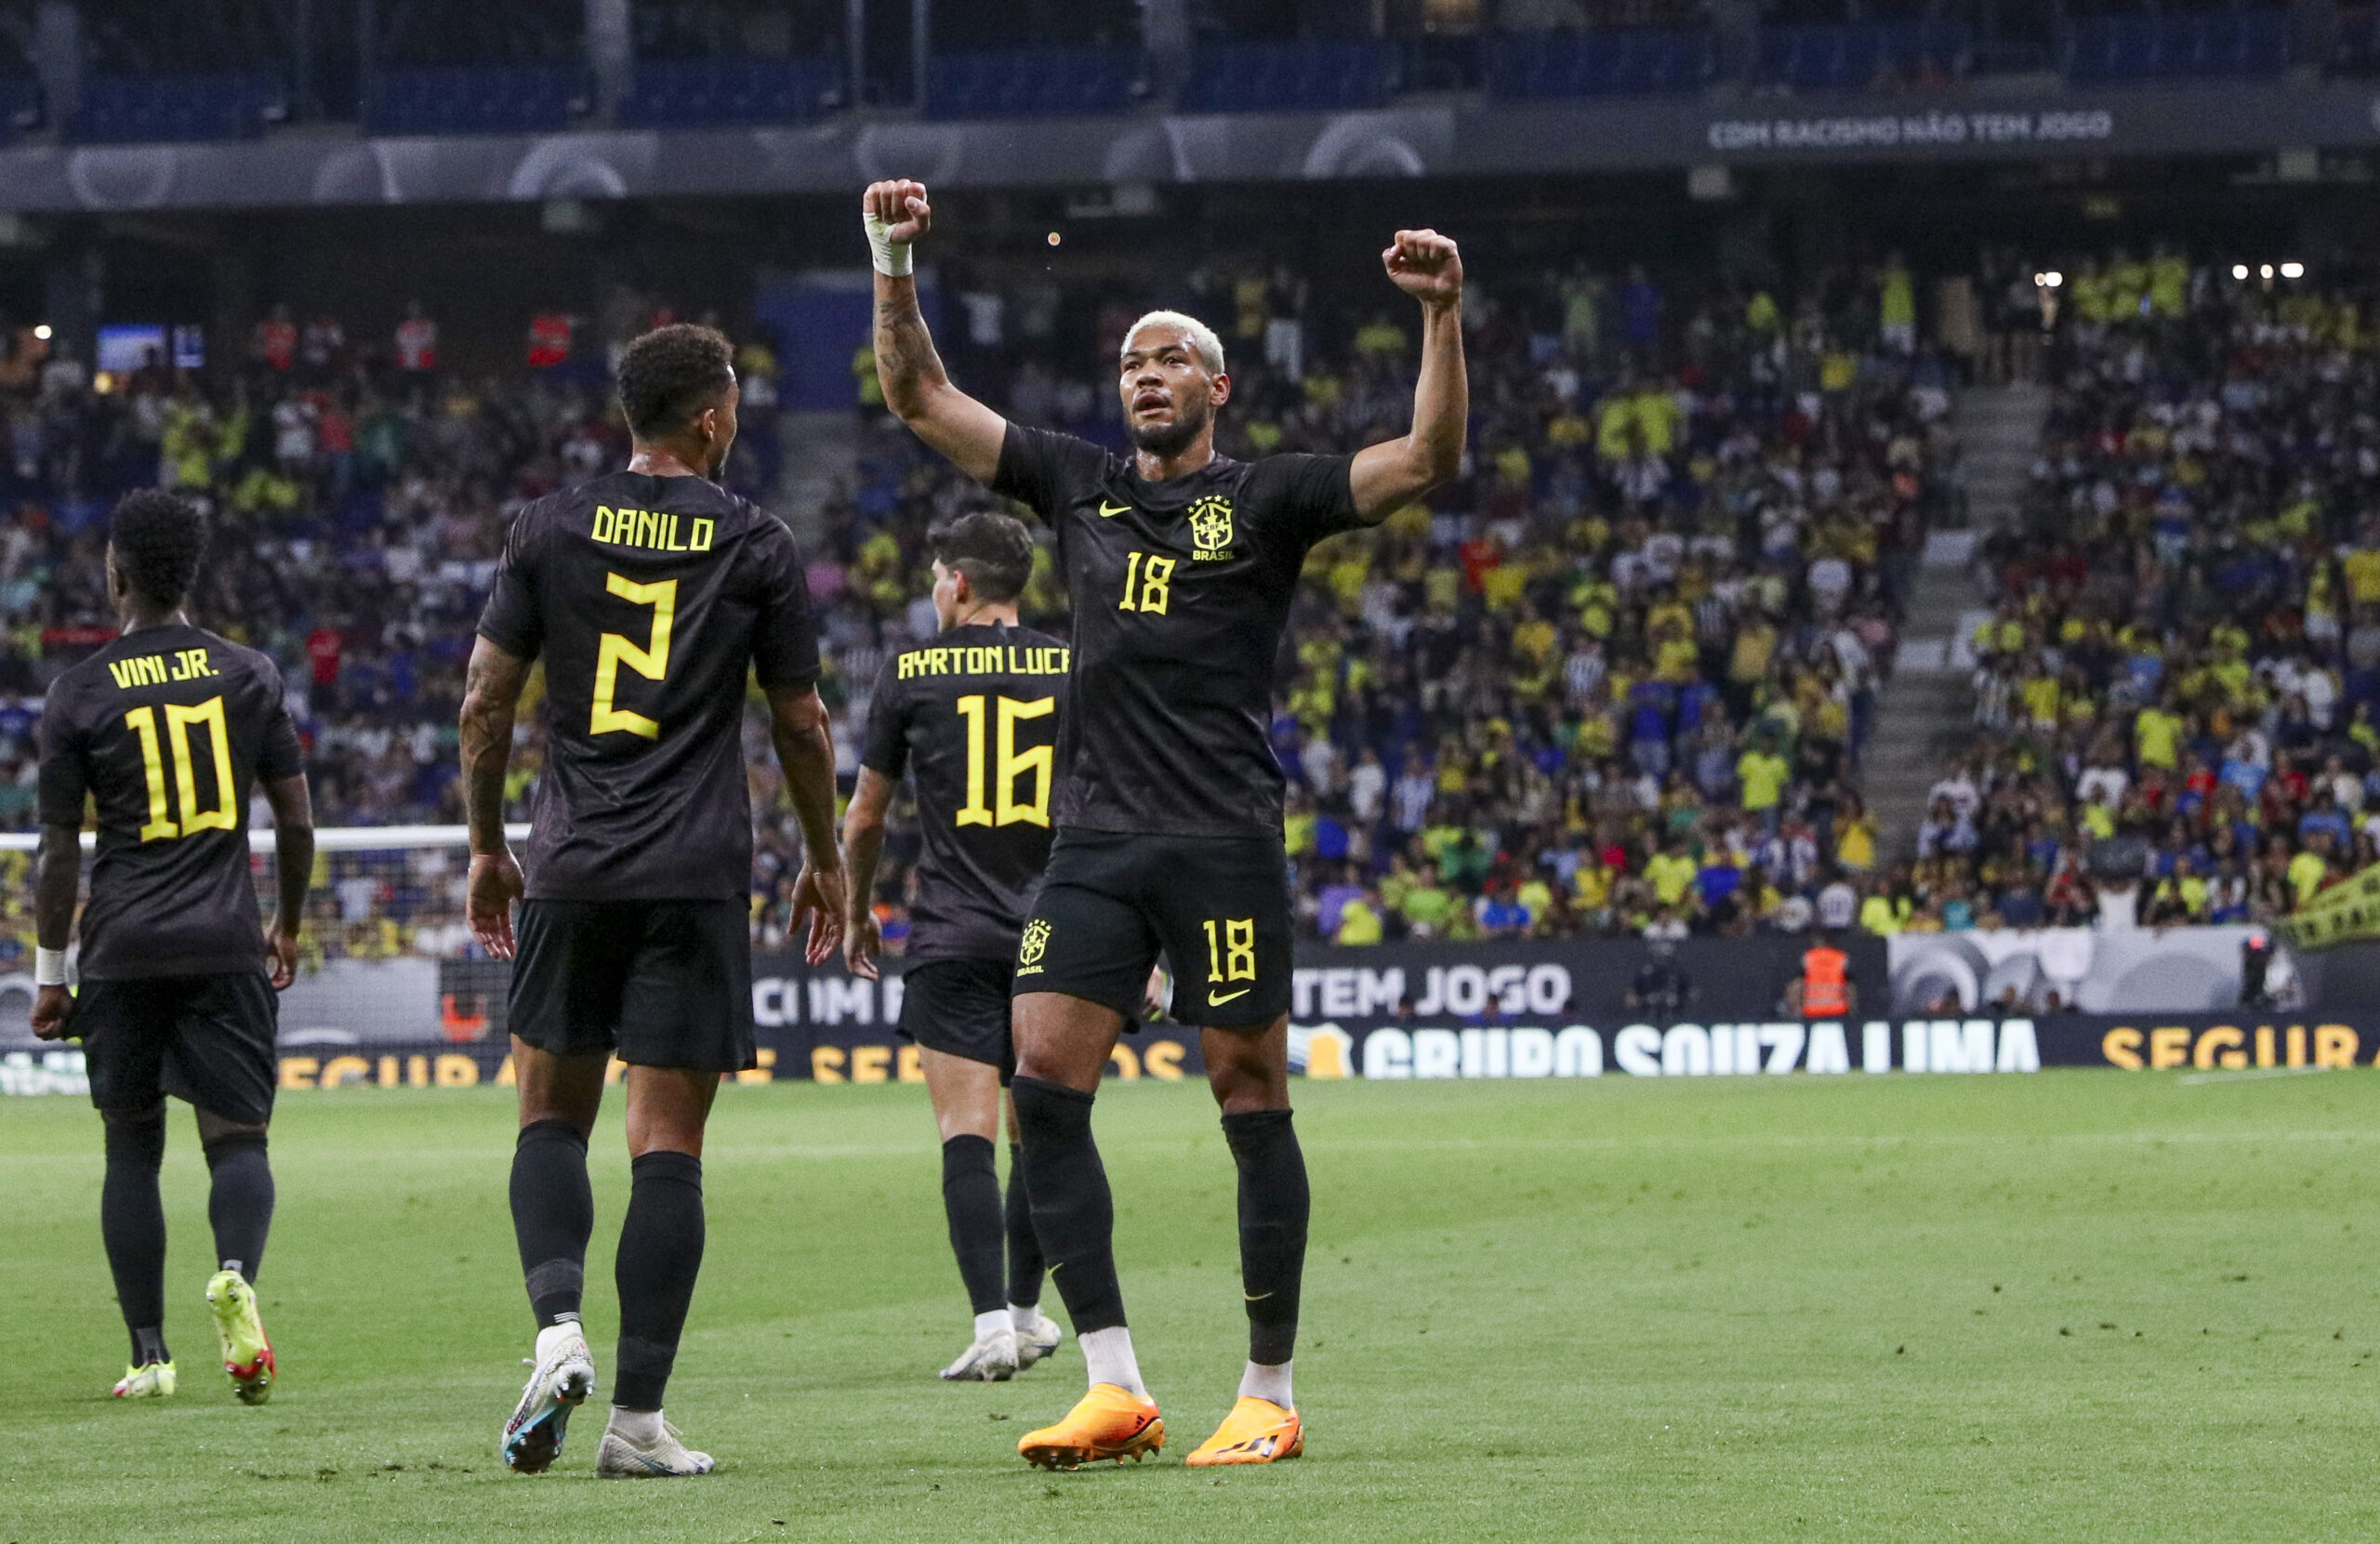 Brasil vence a seleção da Guiné por 4 a 1 em amistoso na Espanha em pré-jogo marcado por racismo